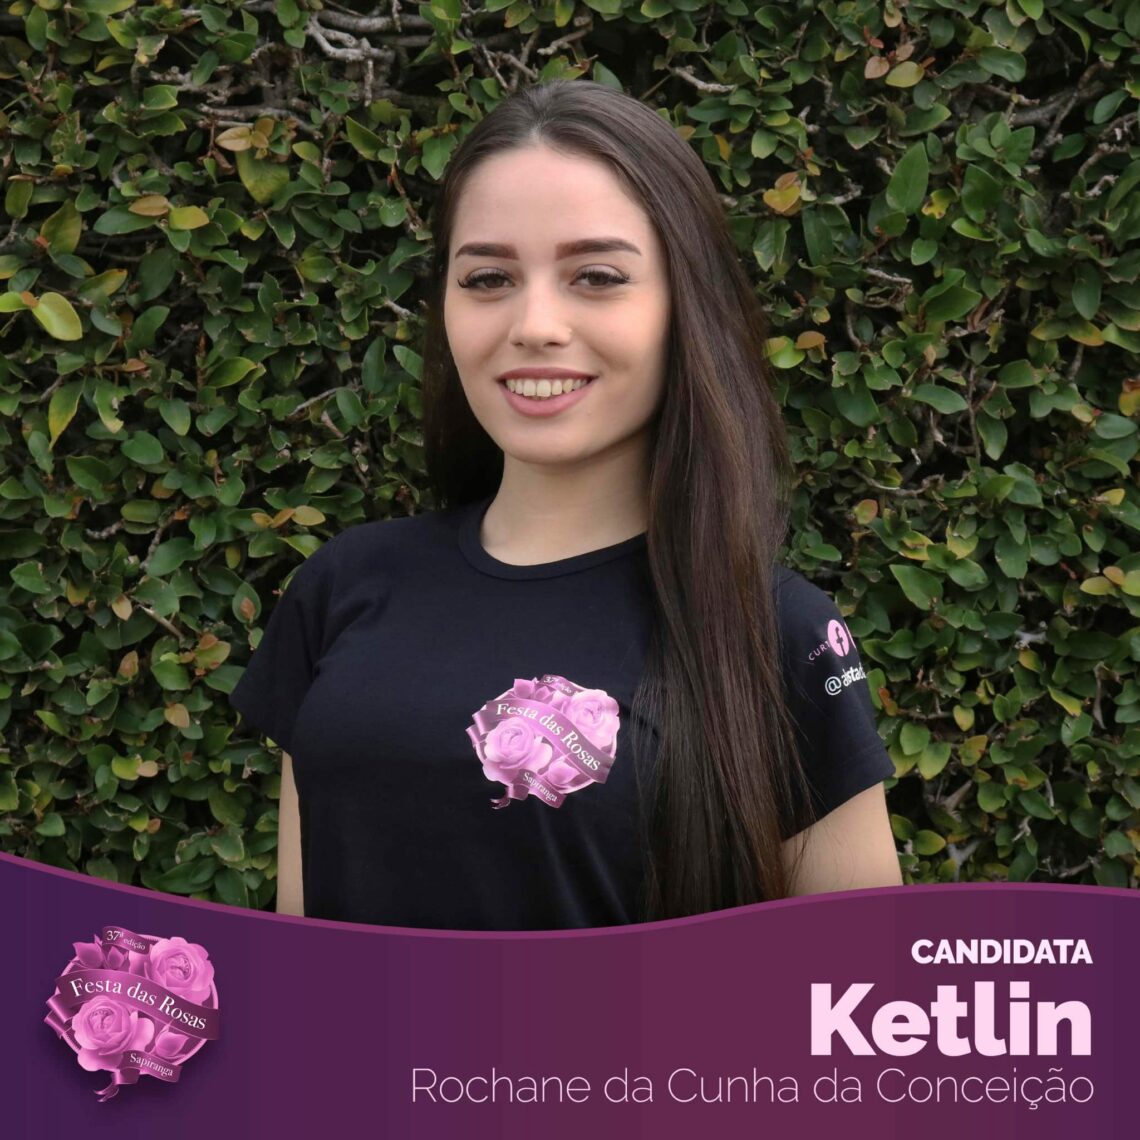 Ketlin Rochane da Cunha da Conceição 17 anos - Moradora do bairro Vila Irma